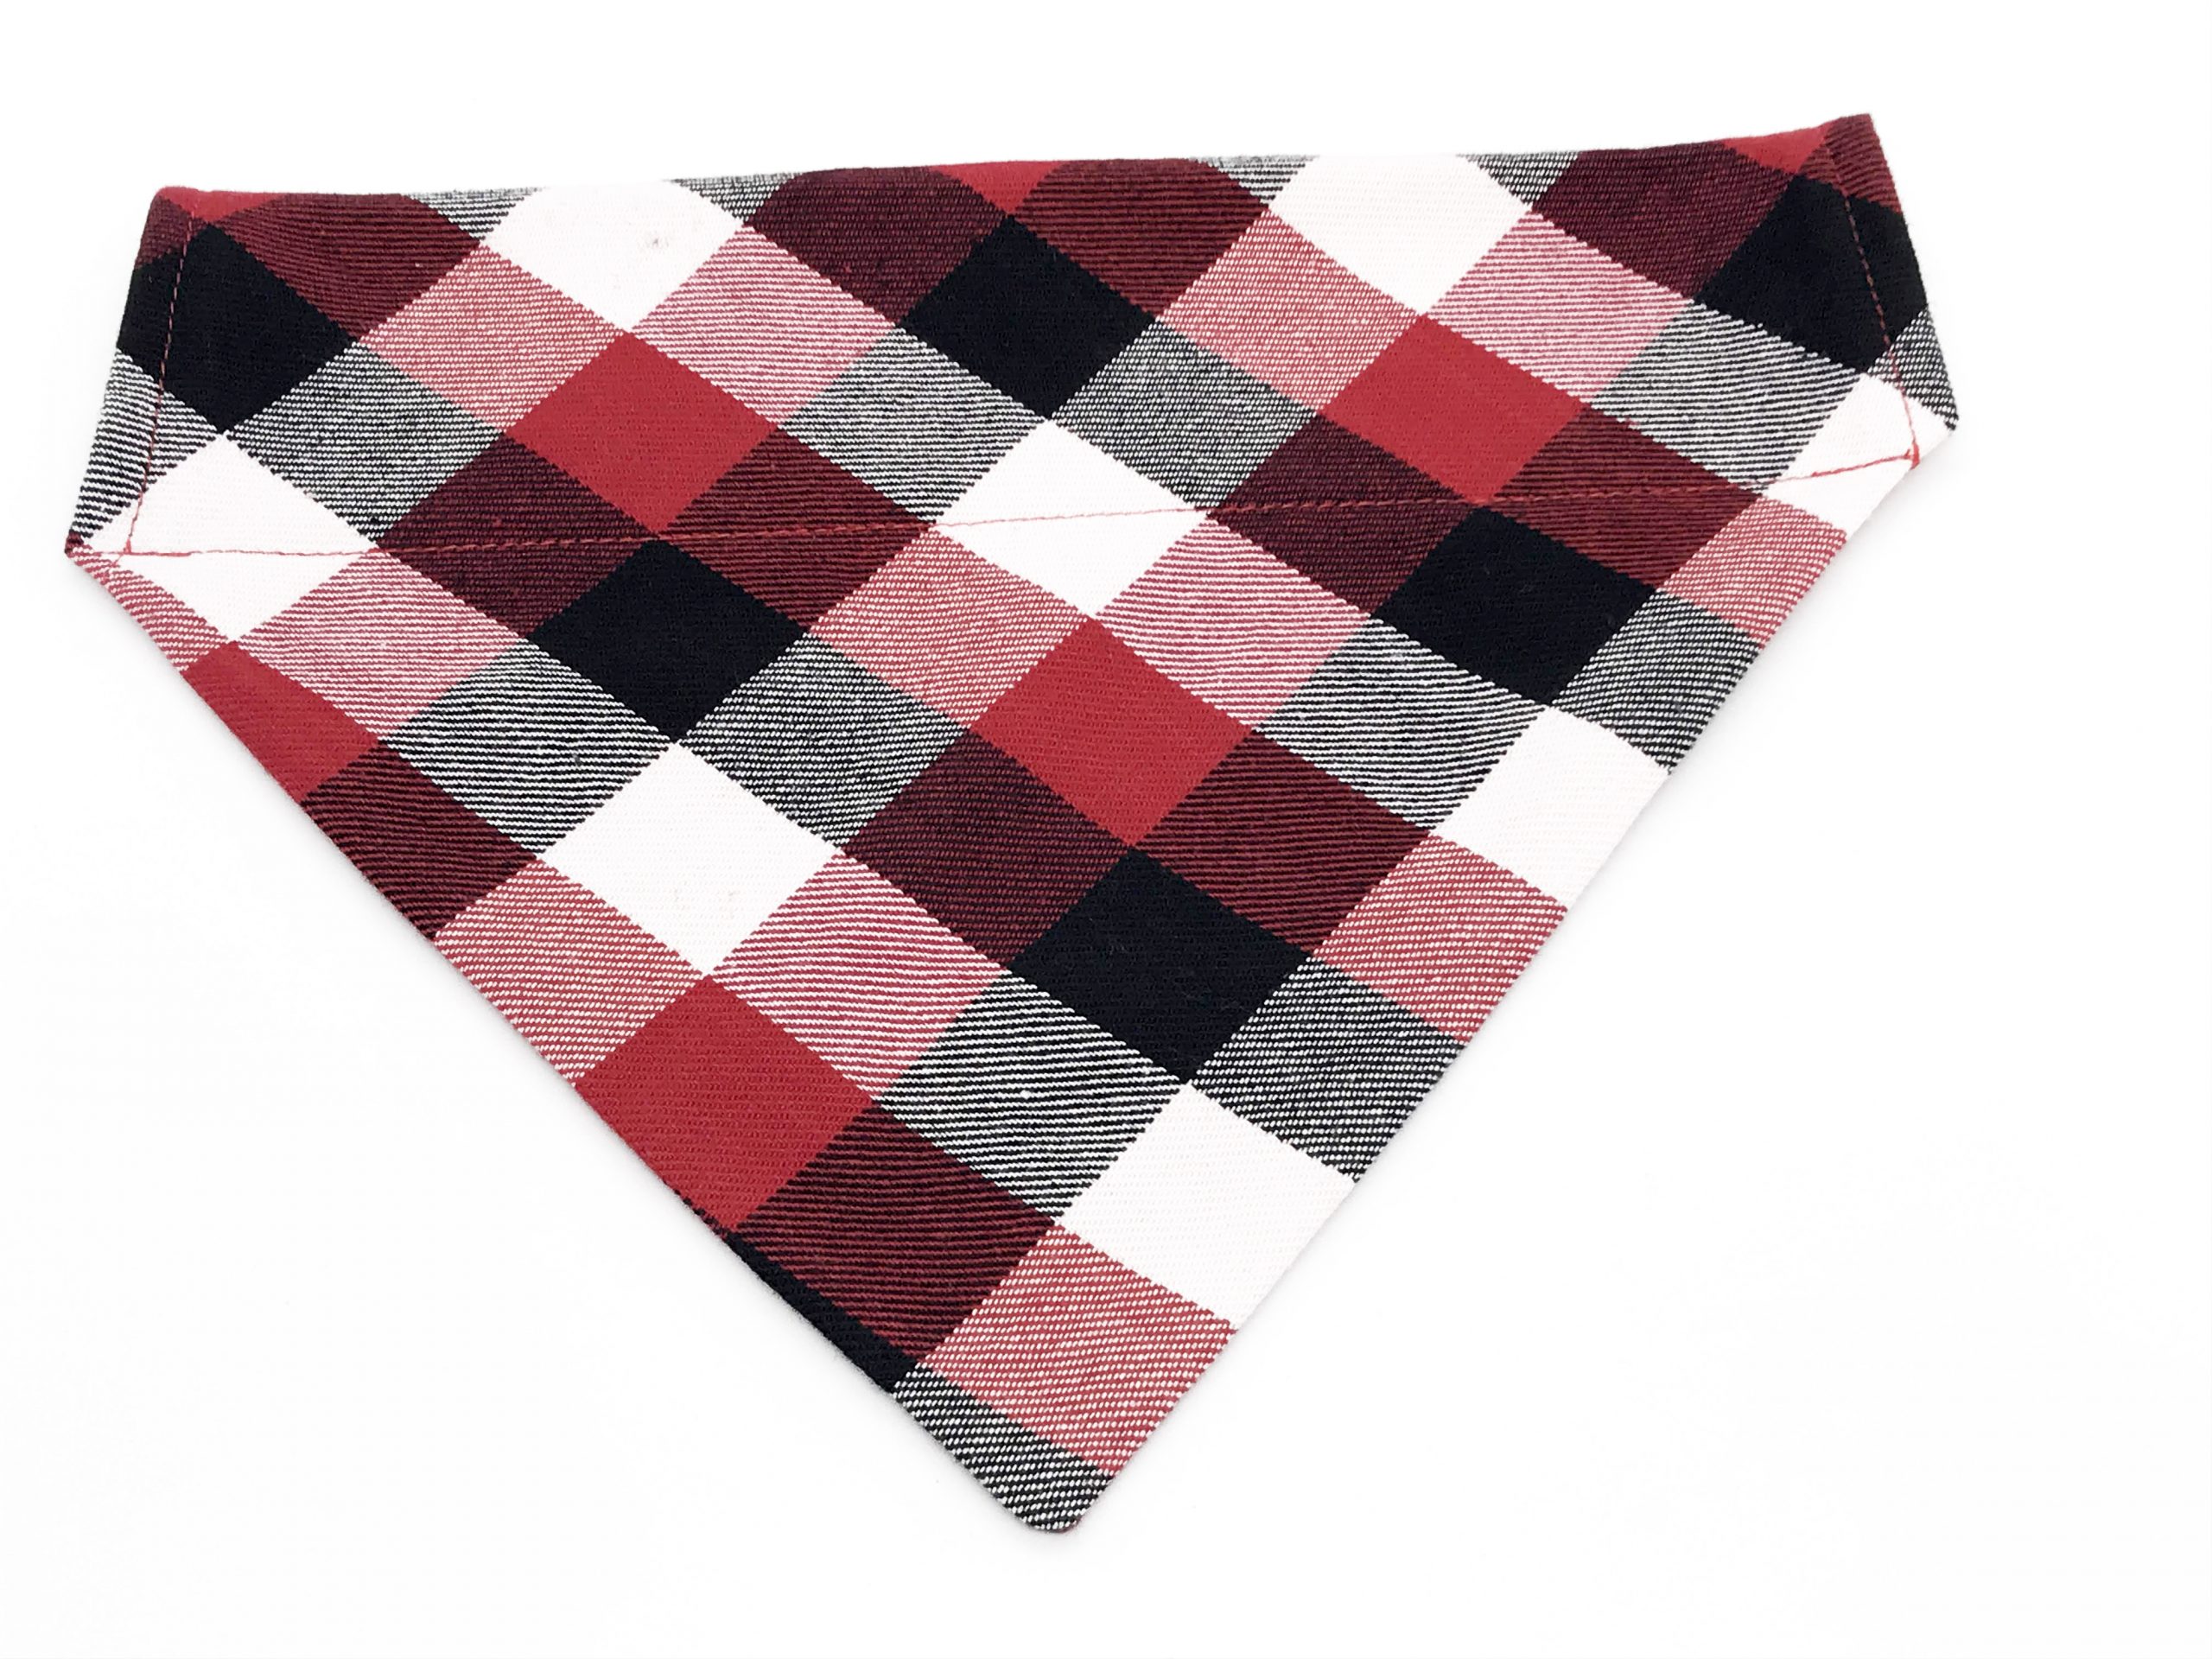 Vuilnisbak Sjah Nageslacht Rood/zwart/wit geruite omkeerbare bandana met aangepaste achterkant - kleed  je pup aan